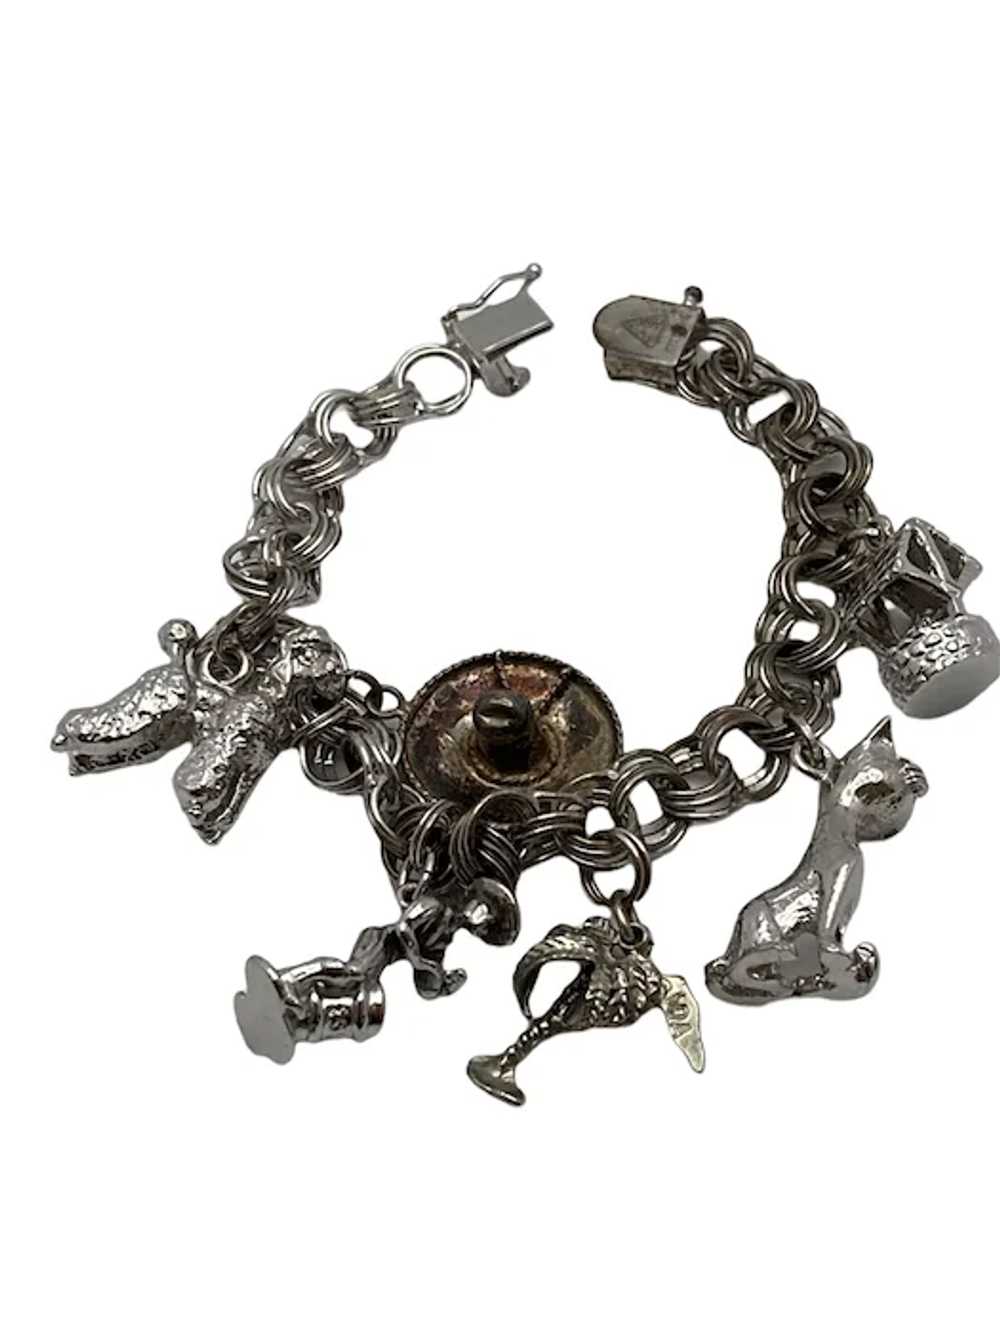 Vintage Sterling Silver Link Charm Bracelet - image 2